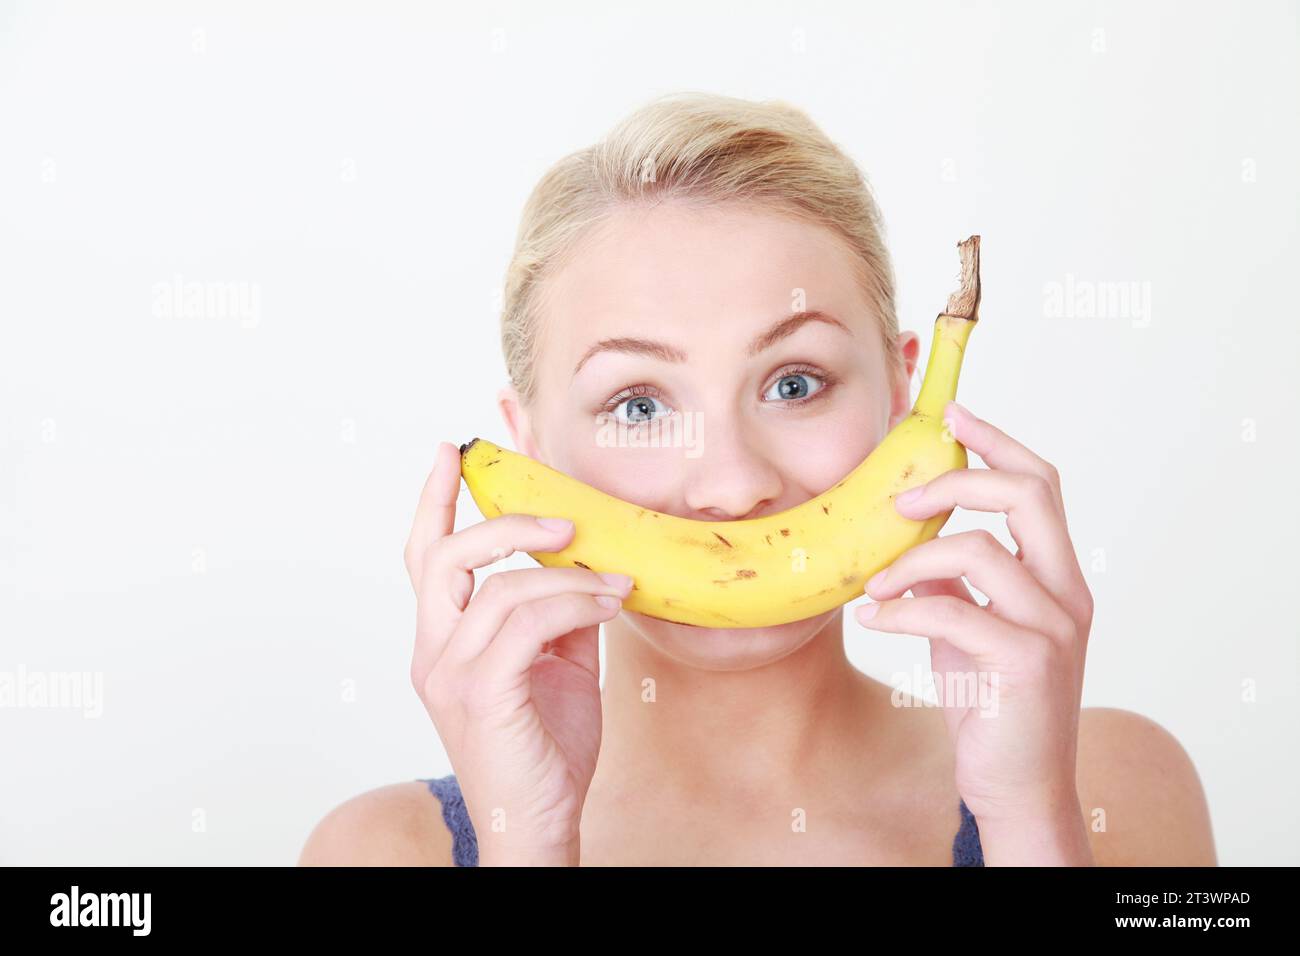 Junge weibliche blonde kaukasische Modell vor weißem Hintergrund, die gesunde Banane als Teil eines Smiley Face hält - gesunde Ernährung Konzept Stockfoto